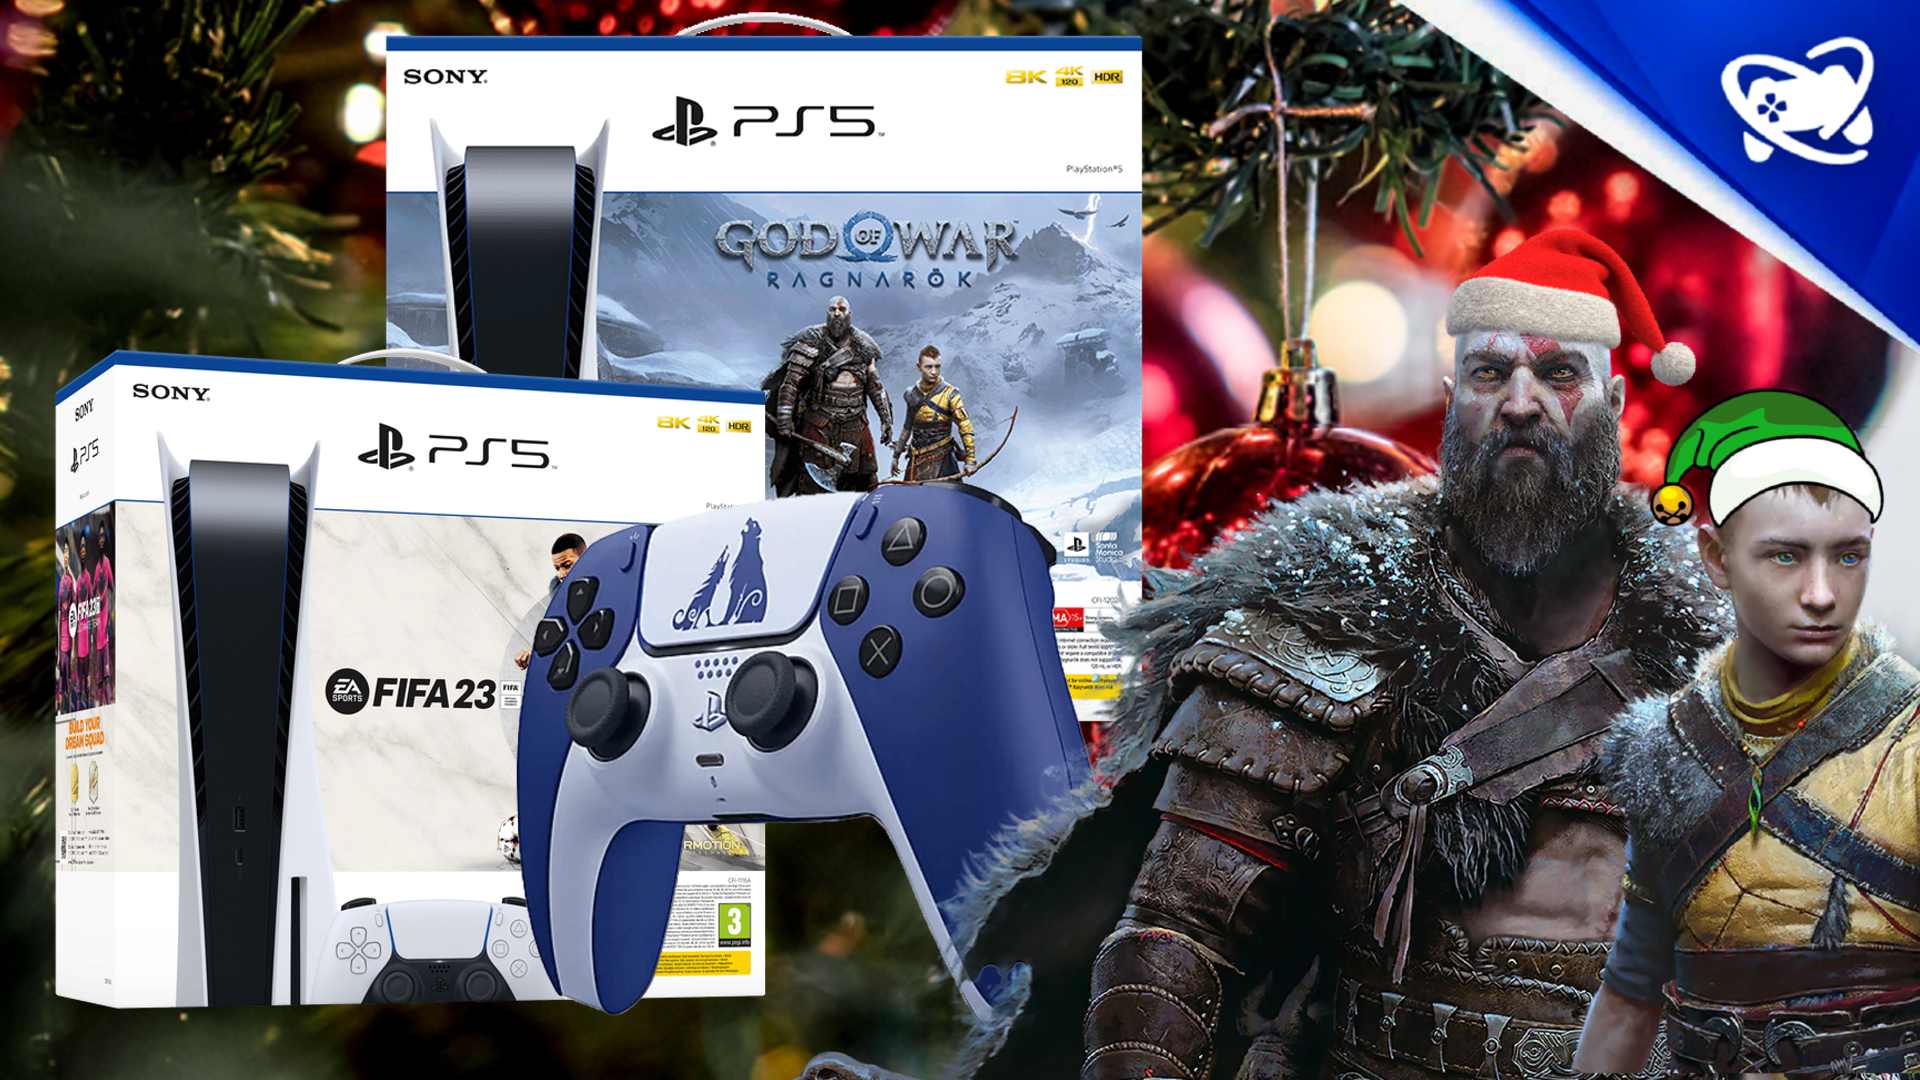 PlayStation revela promoções de Natal para Portugal